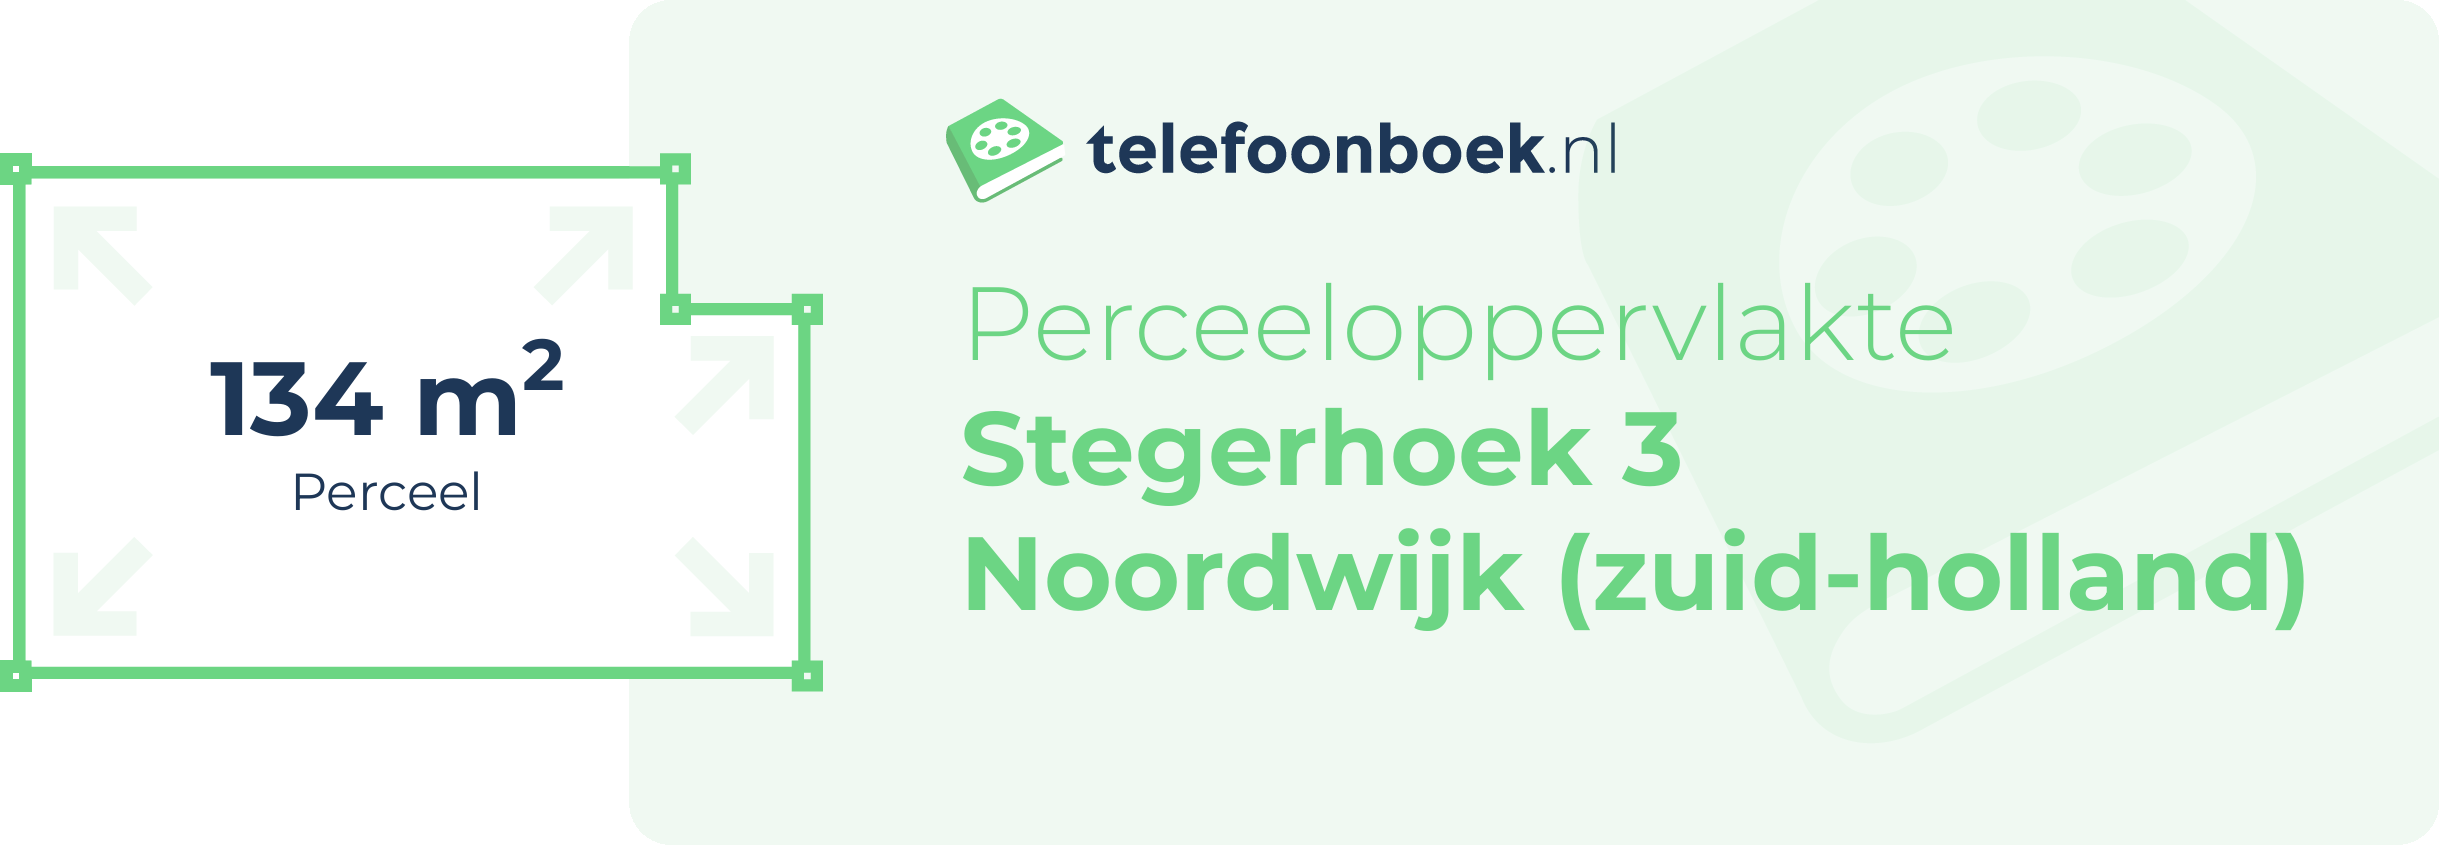 Perceeloppervlakte Stegerhoek 3 Noordwijk (Zuid-Holland)